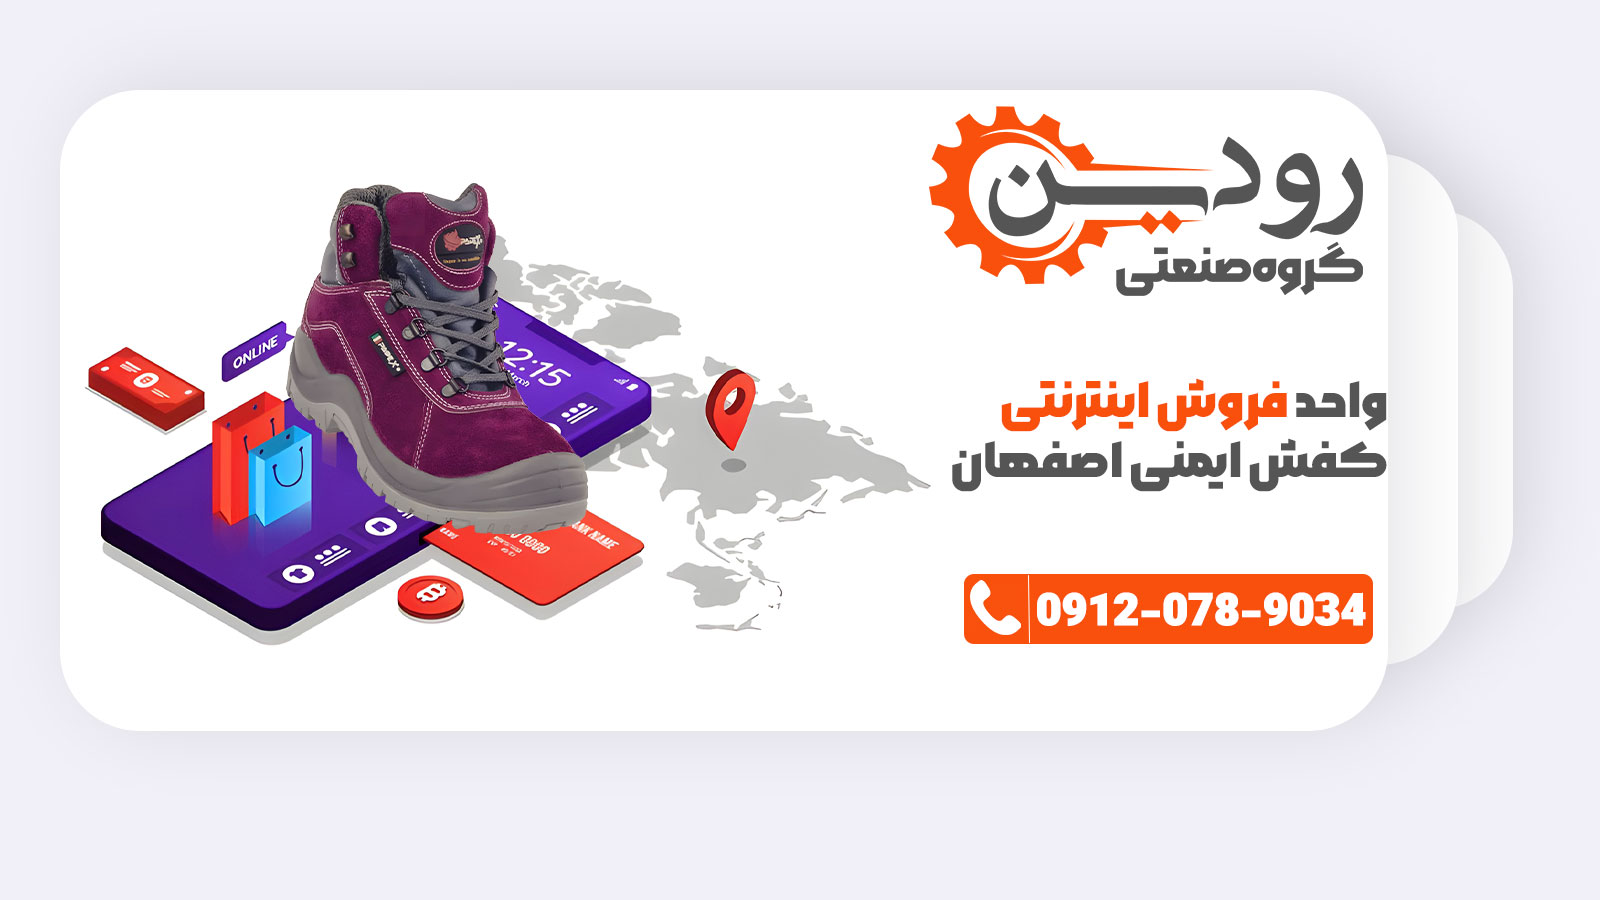 مرکز فروش کفش ایمنی اصفهان سایت خرید اینترنتی خود را با نام رودین صنعت افتتاح کرده.